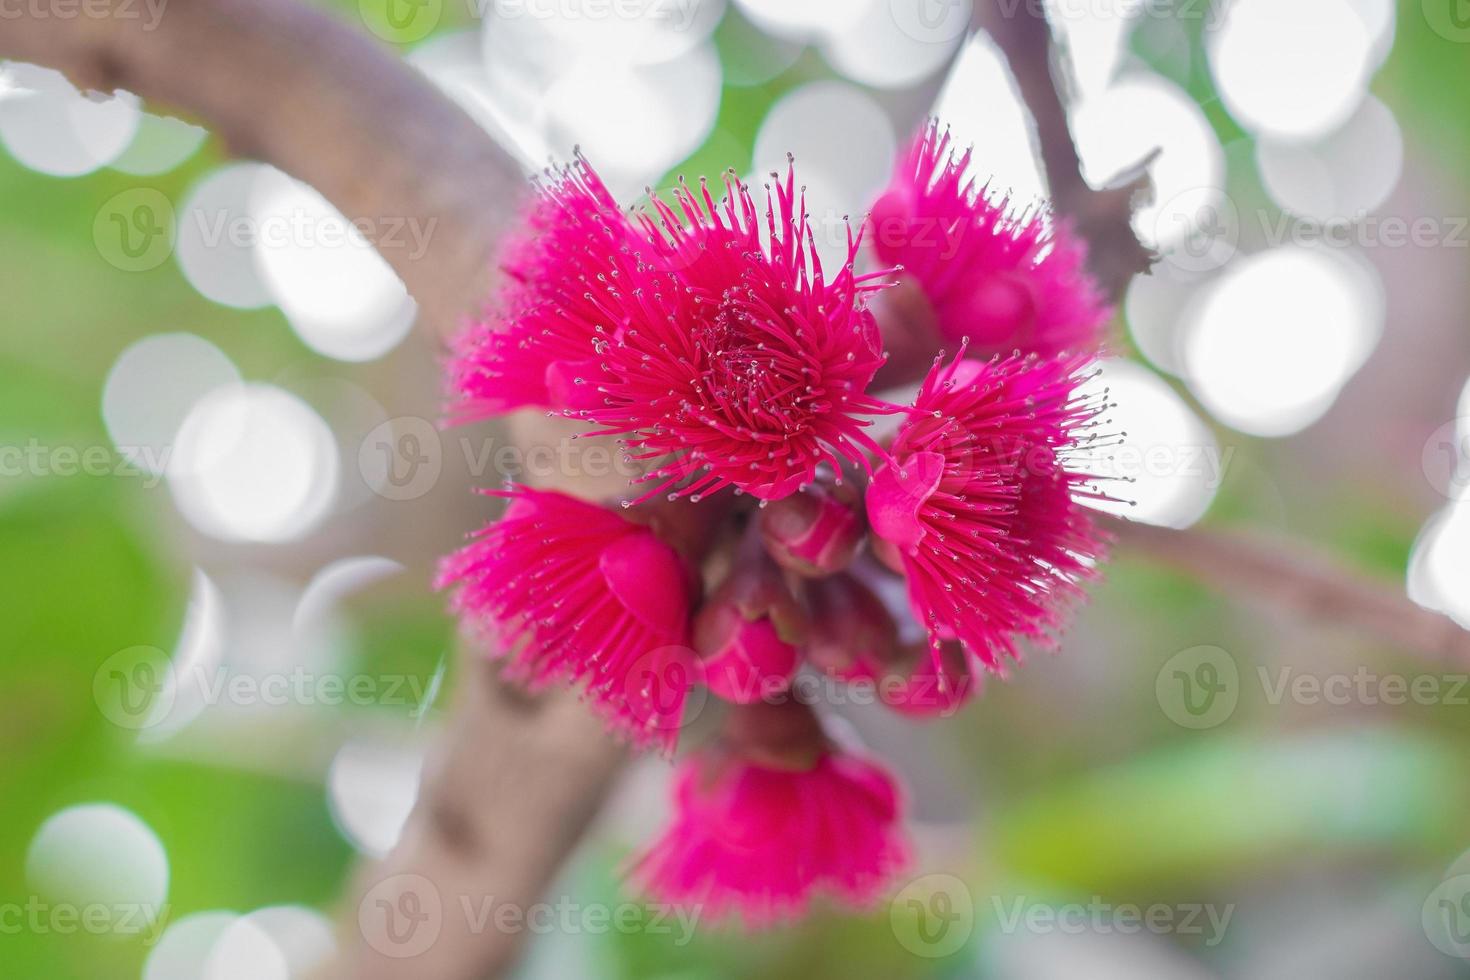 syzygium malaccense ou pomerac est un fruit tropical en thaïlande. sa fleur est de couleur rose foncé. il fleurit au début de l'été et porte ses fruits trois mois plus tard. photo